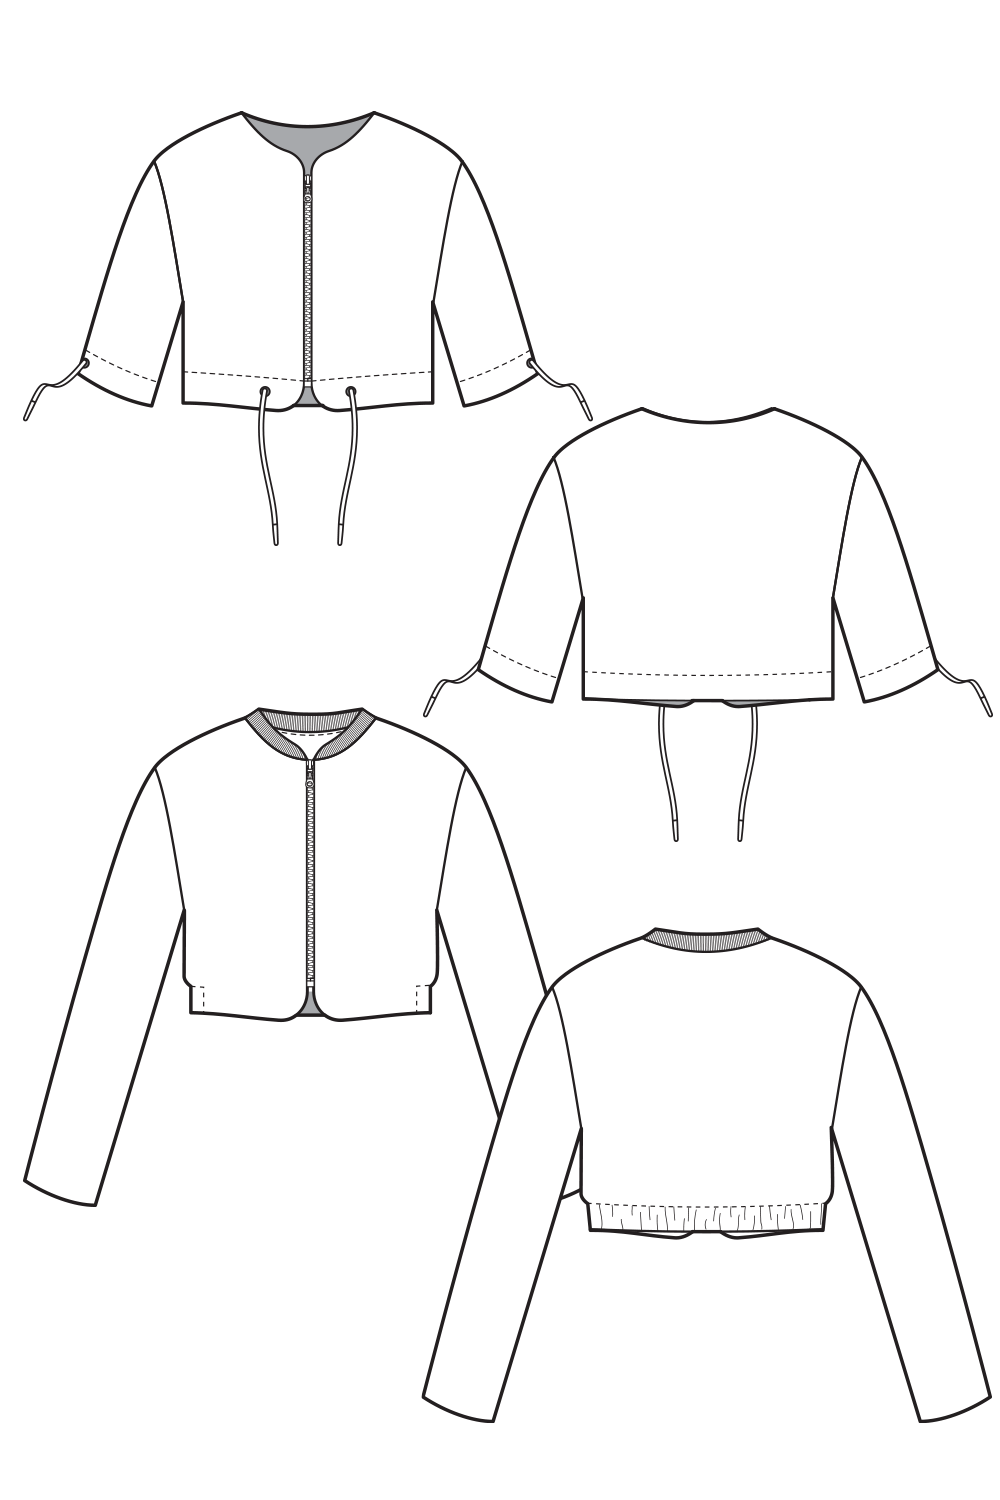 13-4 Short bomber jacket in 2 variations